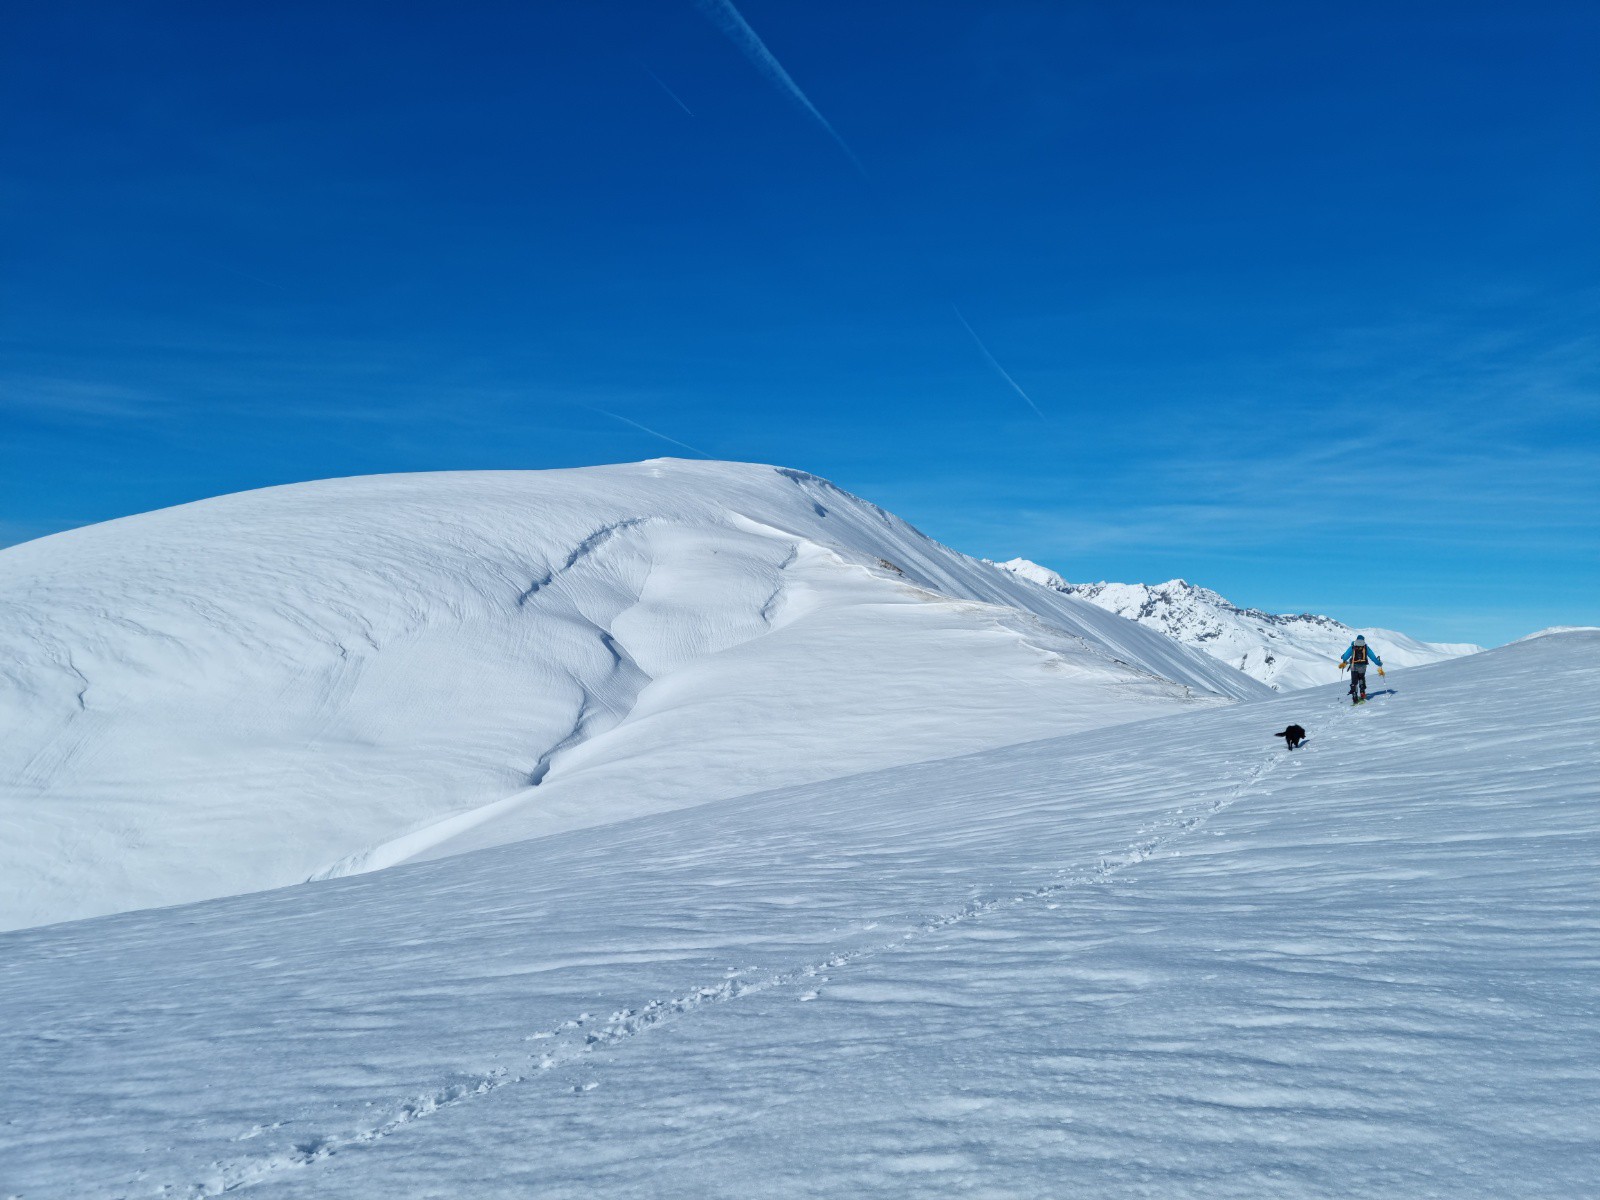 le sommet du jour, qui se donne des allures de Mont Blanc